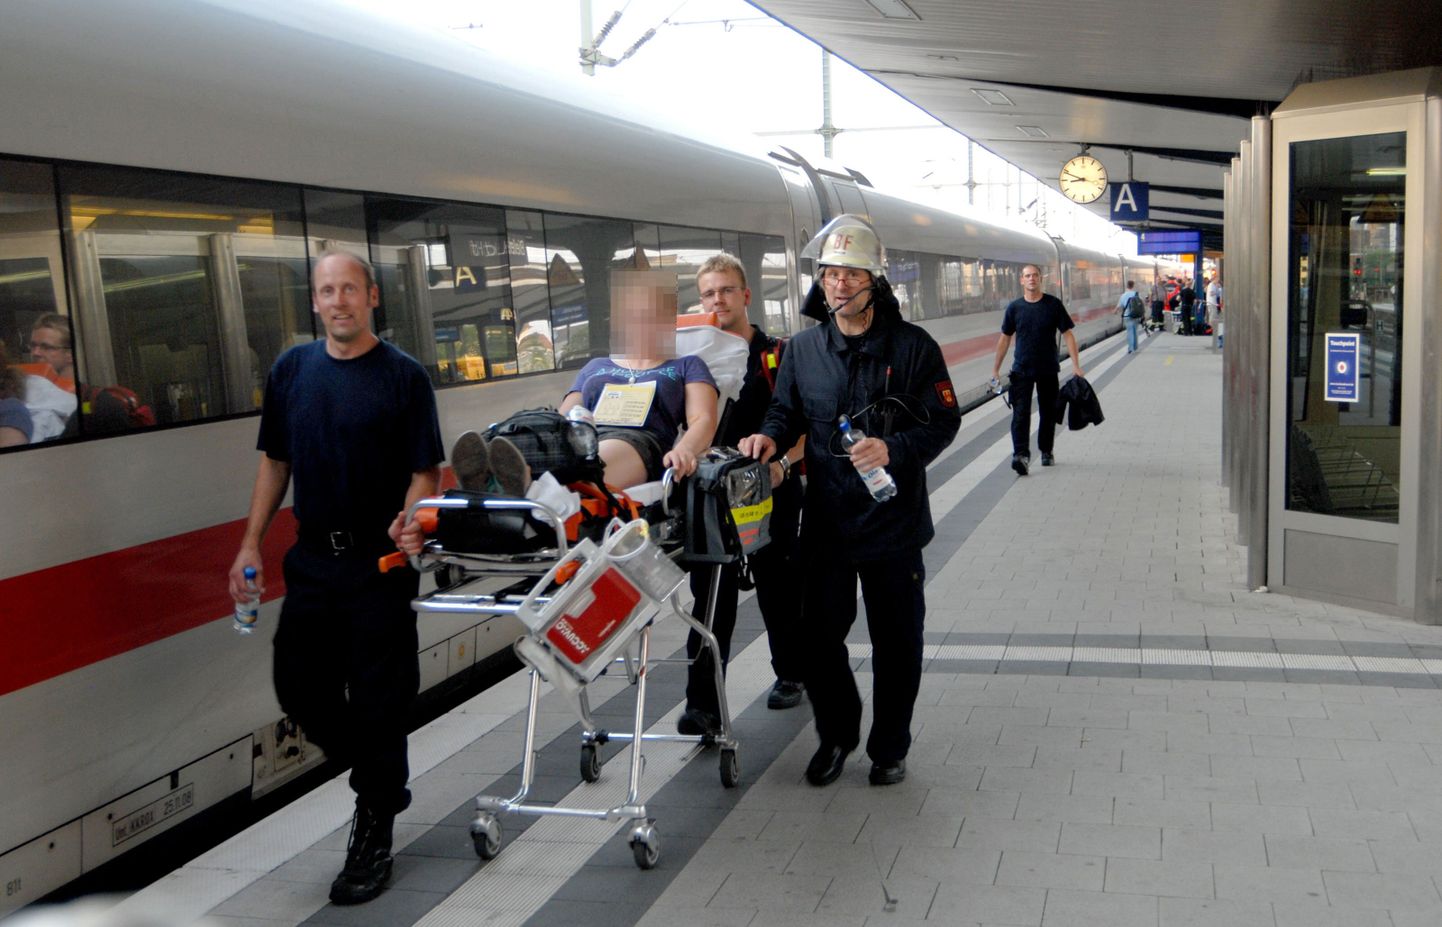 Работники спасательной службы увозят студента, которому стало плохо из-за жары в поезде. 11 июля, Билефельд, Германия.